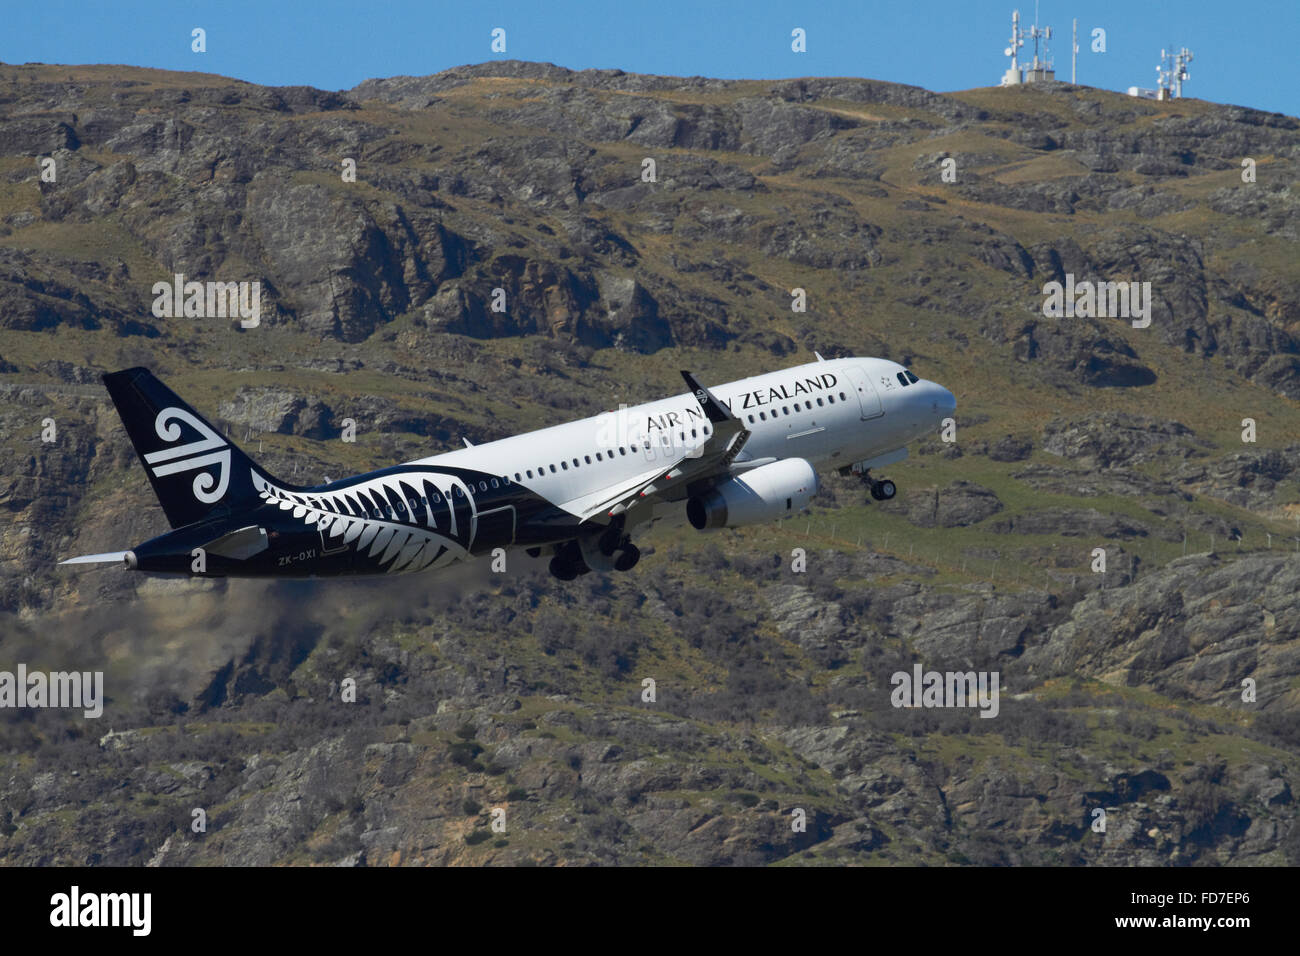 Air New Zealand A320 Airbus avion au décollage de l'aéroport de Queenstown, Otago, île du Sud, Nouvelle-Zélande Banque D'Images